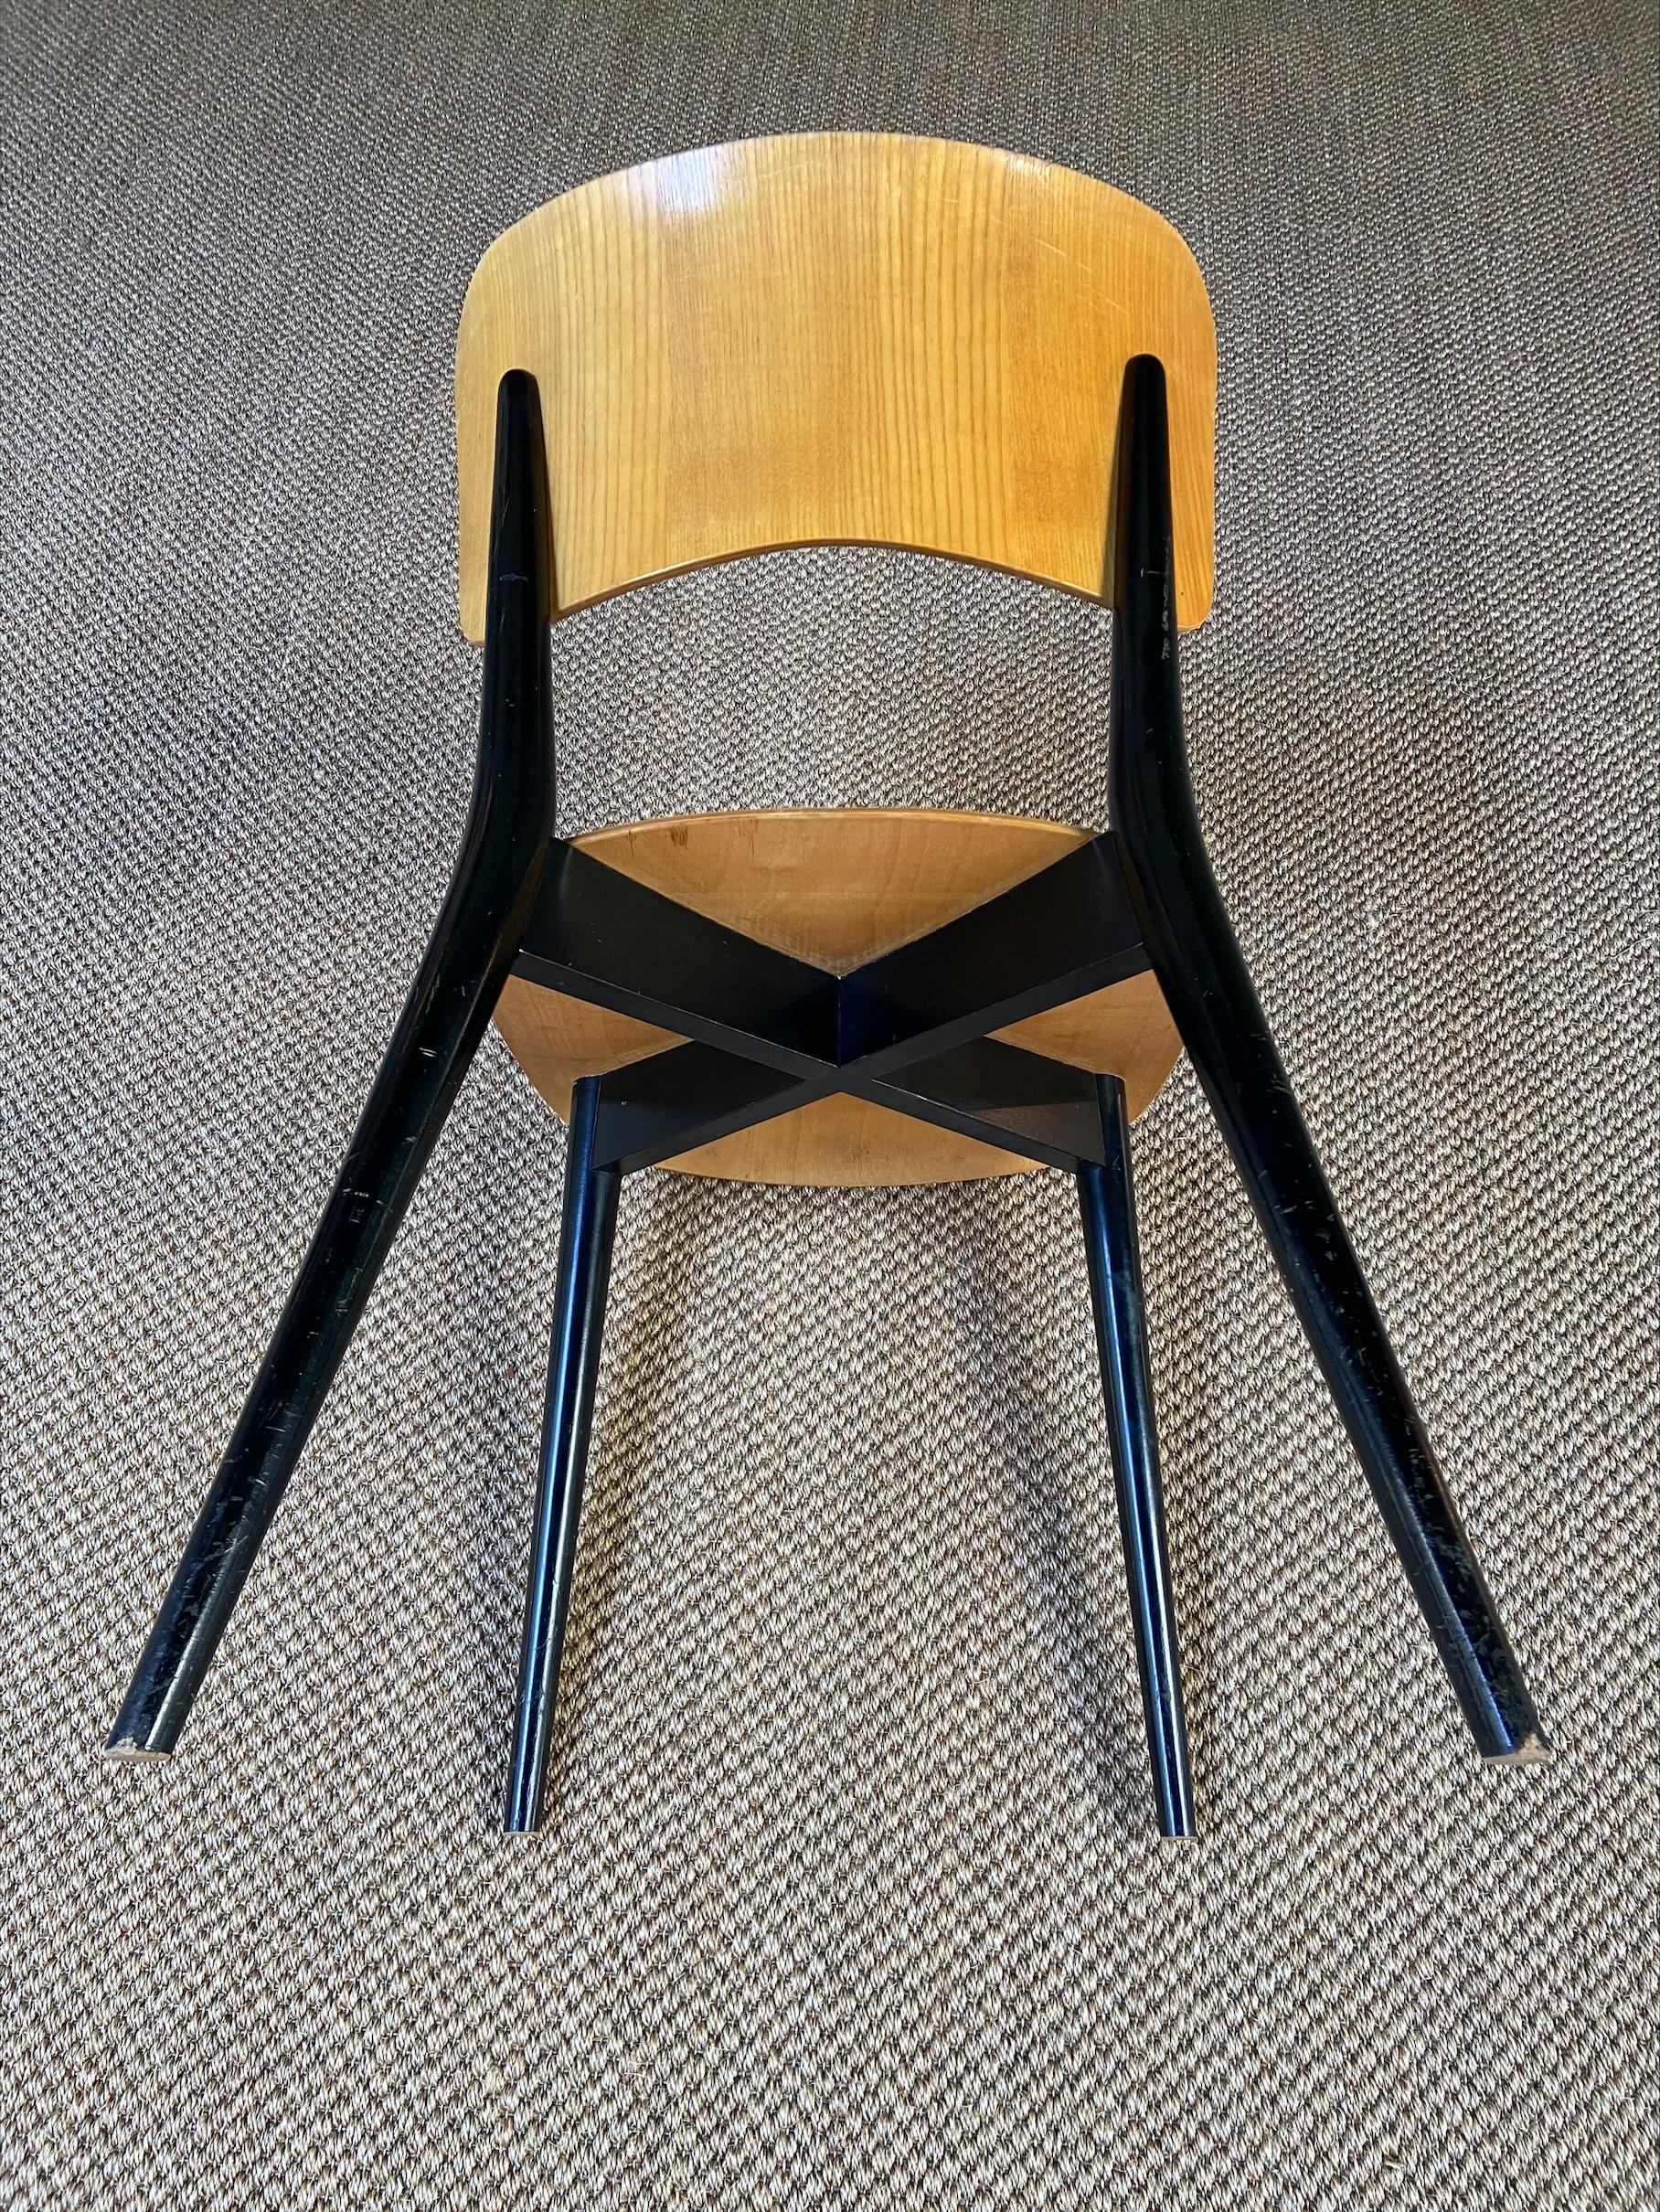 Max Bill - Chair 